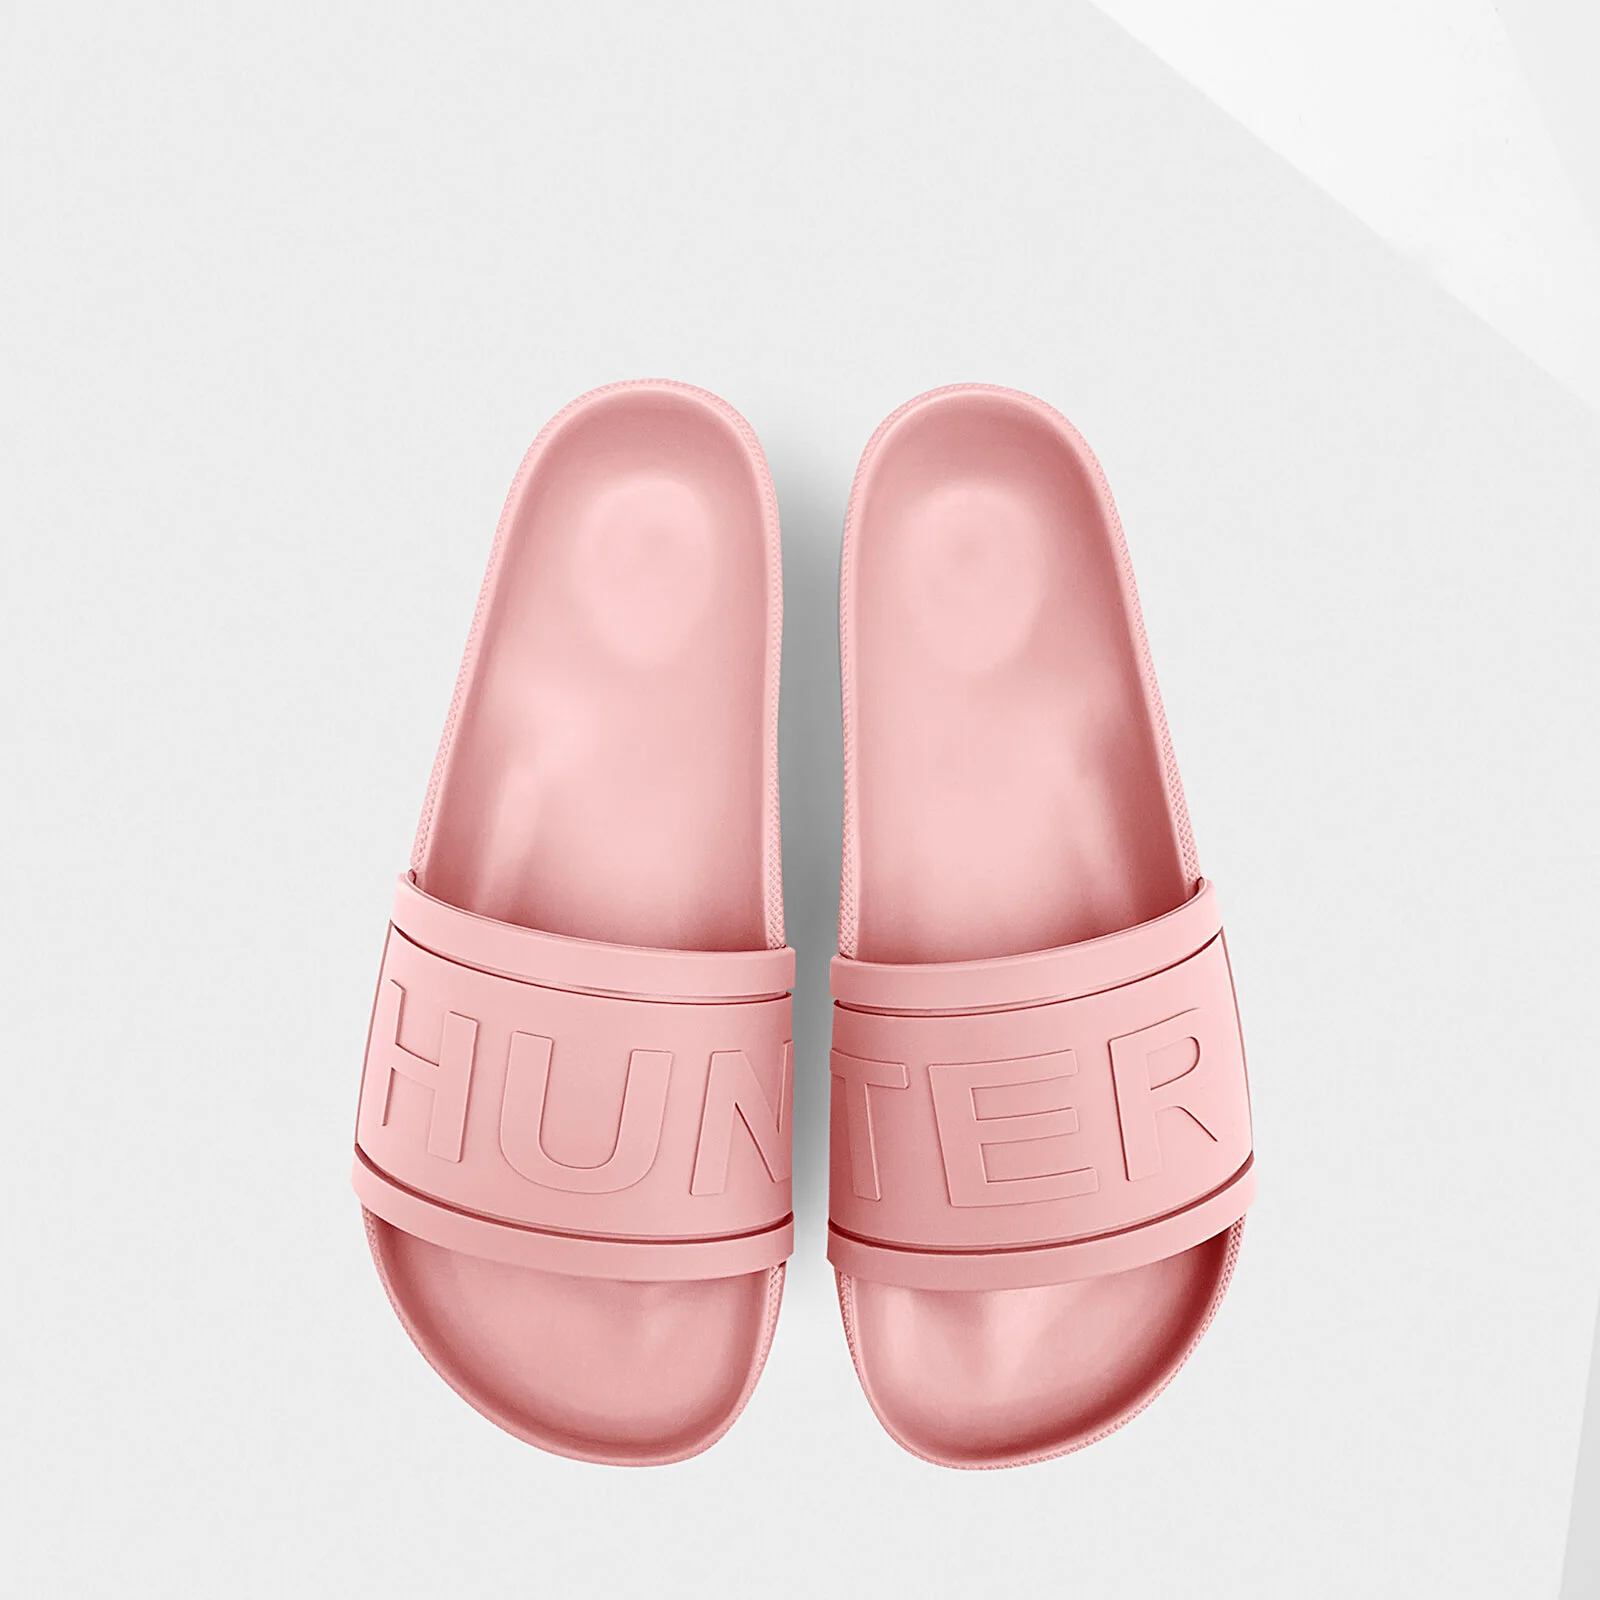 Hunter Women's Original Slide Sandals - Pink Sand Image 1